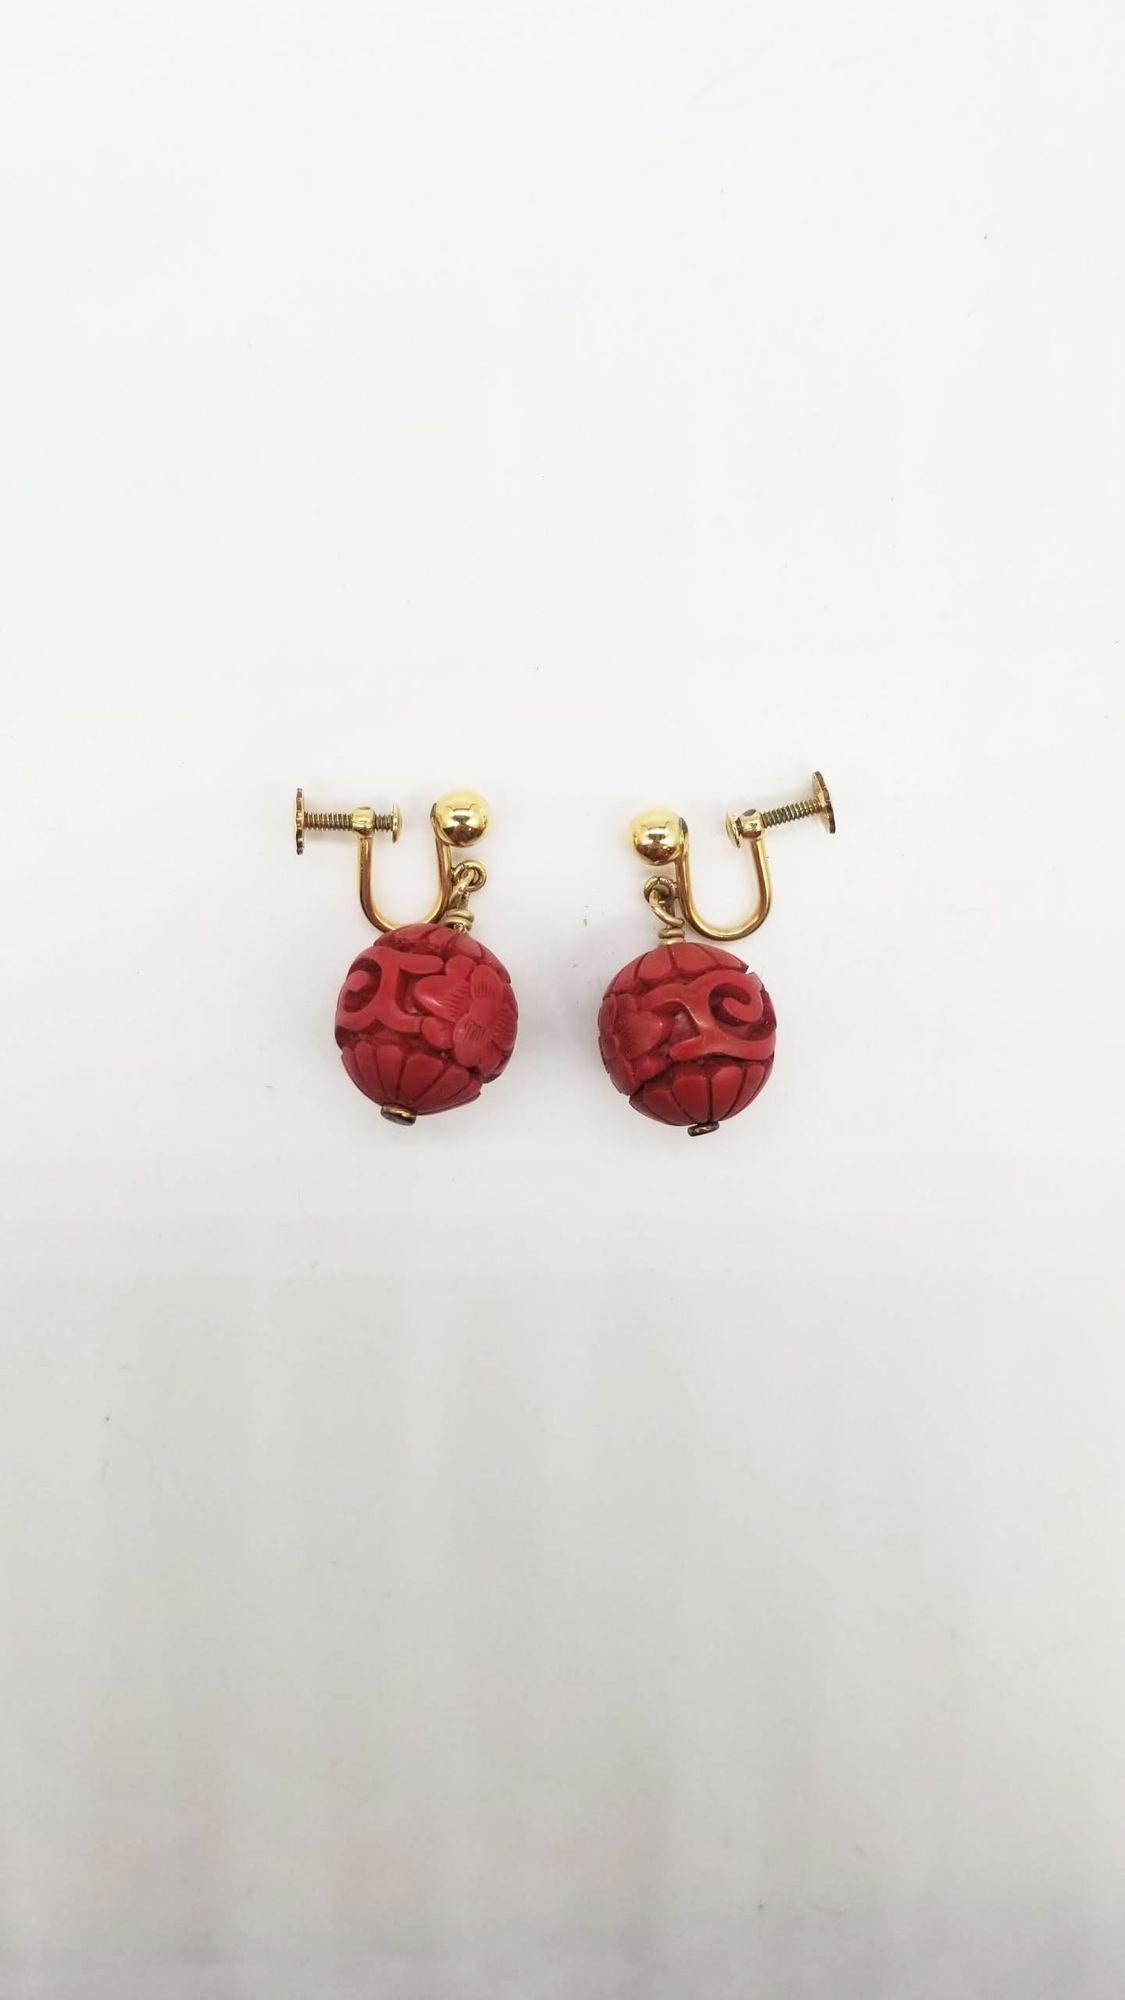 Dieses Set aus chinesischer Perlenkette und Ohrringen besteht aus einem großen Anhänger mit dem Shou-Symbol und verschlungenen roten Perlen mit Blumenmotiven. Das sieht aus wie echte Zinnoberperlen. Es gibt keine Unvollkommenheiten in den